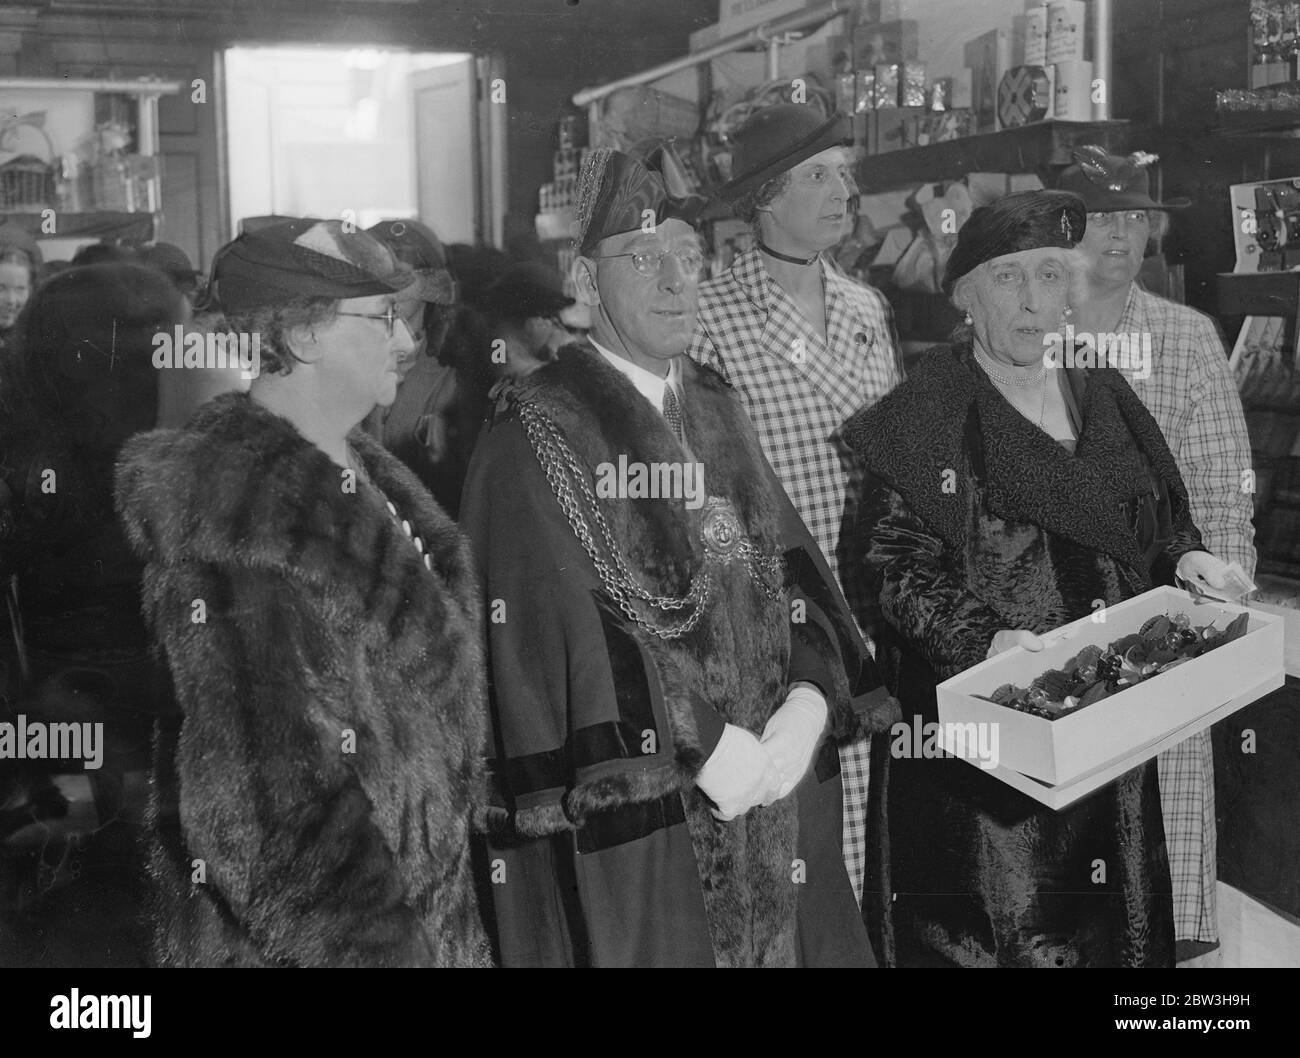 Prinzessin Helena Victoria eröffnet Weihnachtsmarkt im St. Thomas 's Hospital. Prinzessin Helena Victoria mit dem Bürgermeister von Lambeth, Stadtrat L S Bickley, auf dem Markt. 19. November 1935 Stockfoto